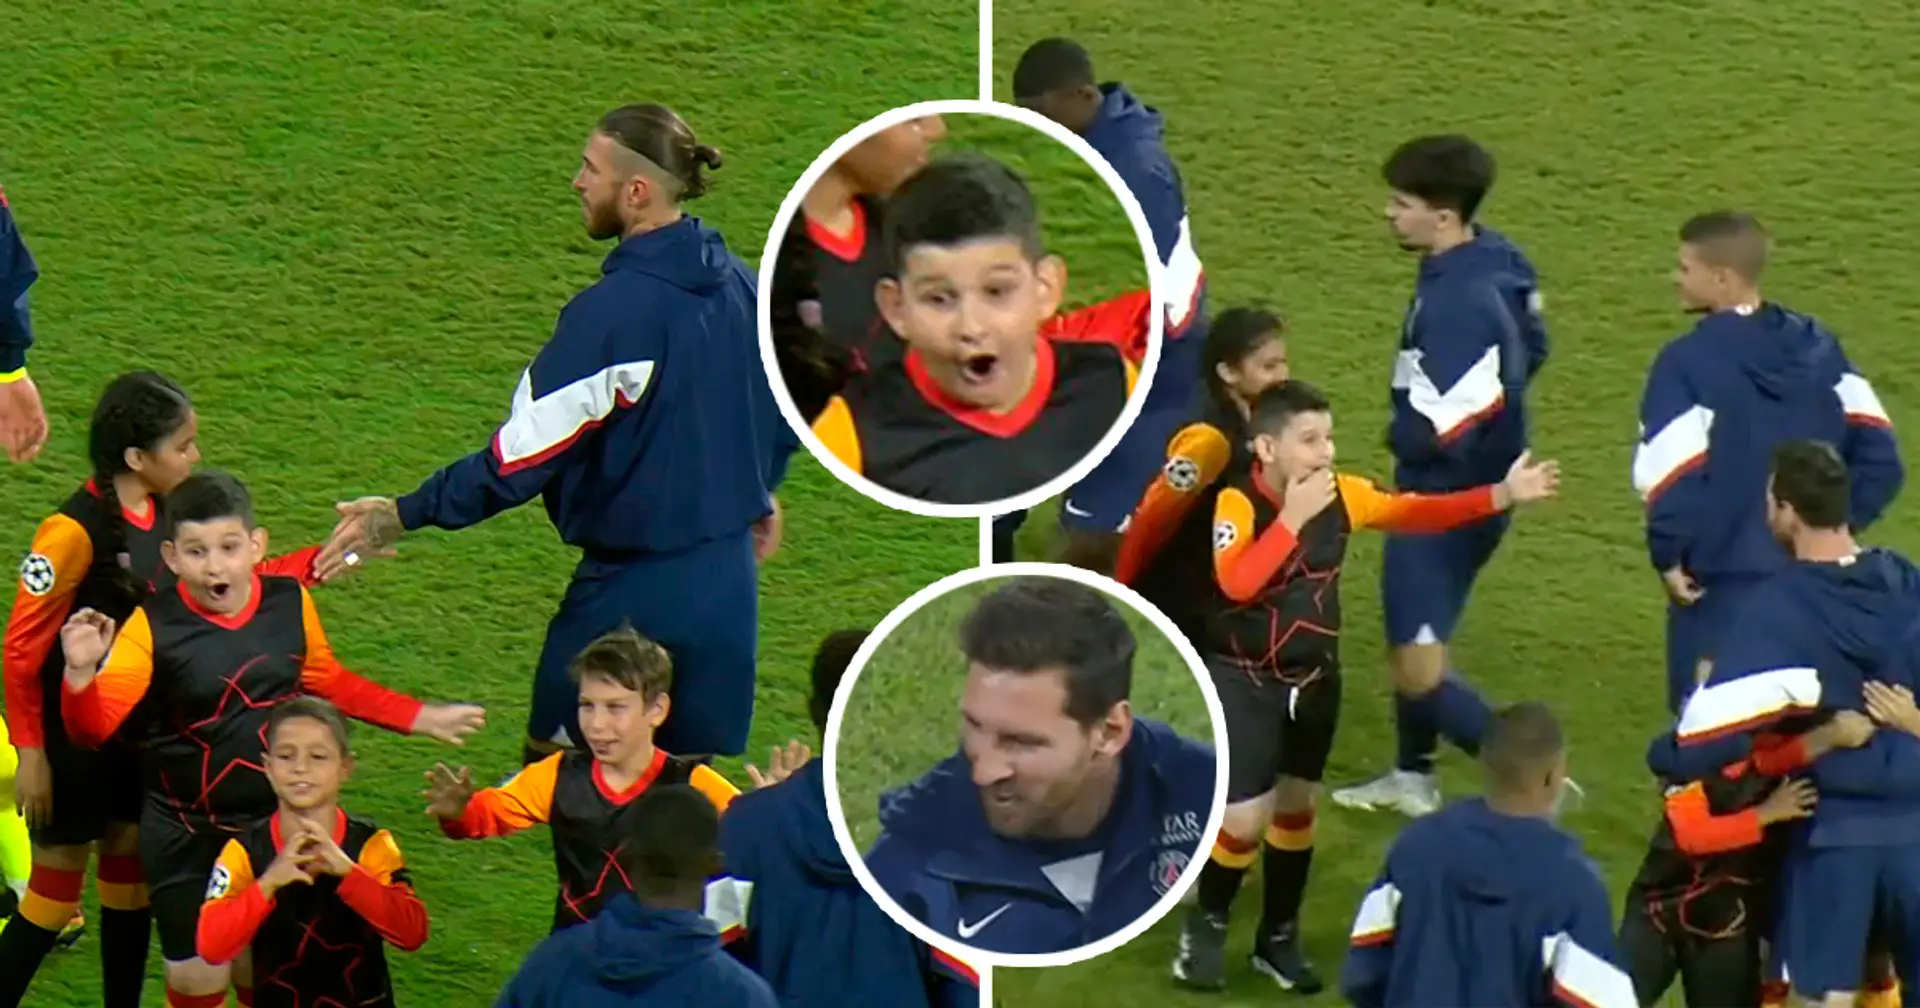 Herzerwärmende Reaktion der Champions-League-Einlaufkinder auf Lionel Messi, während seine PSG-Teamkollegen ignoriert werden